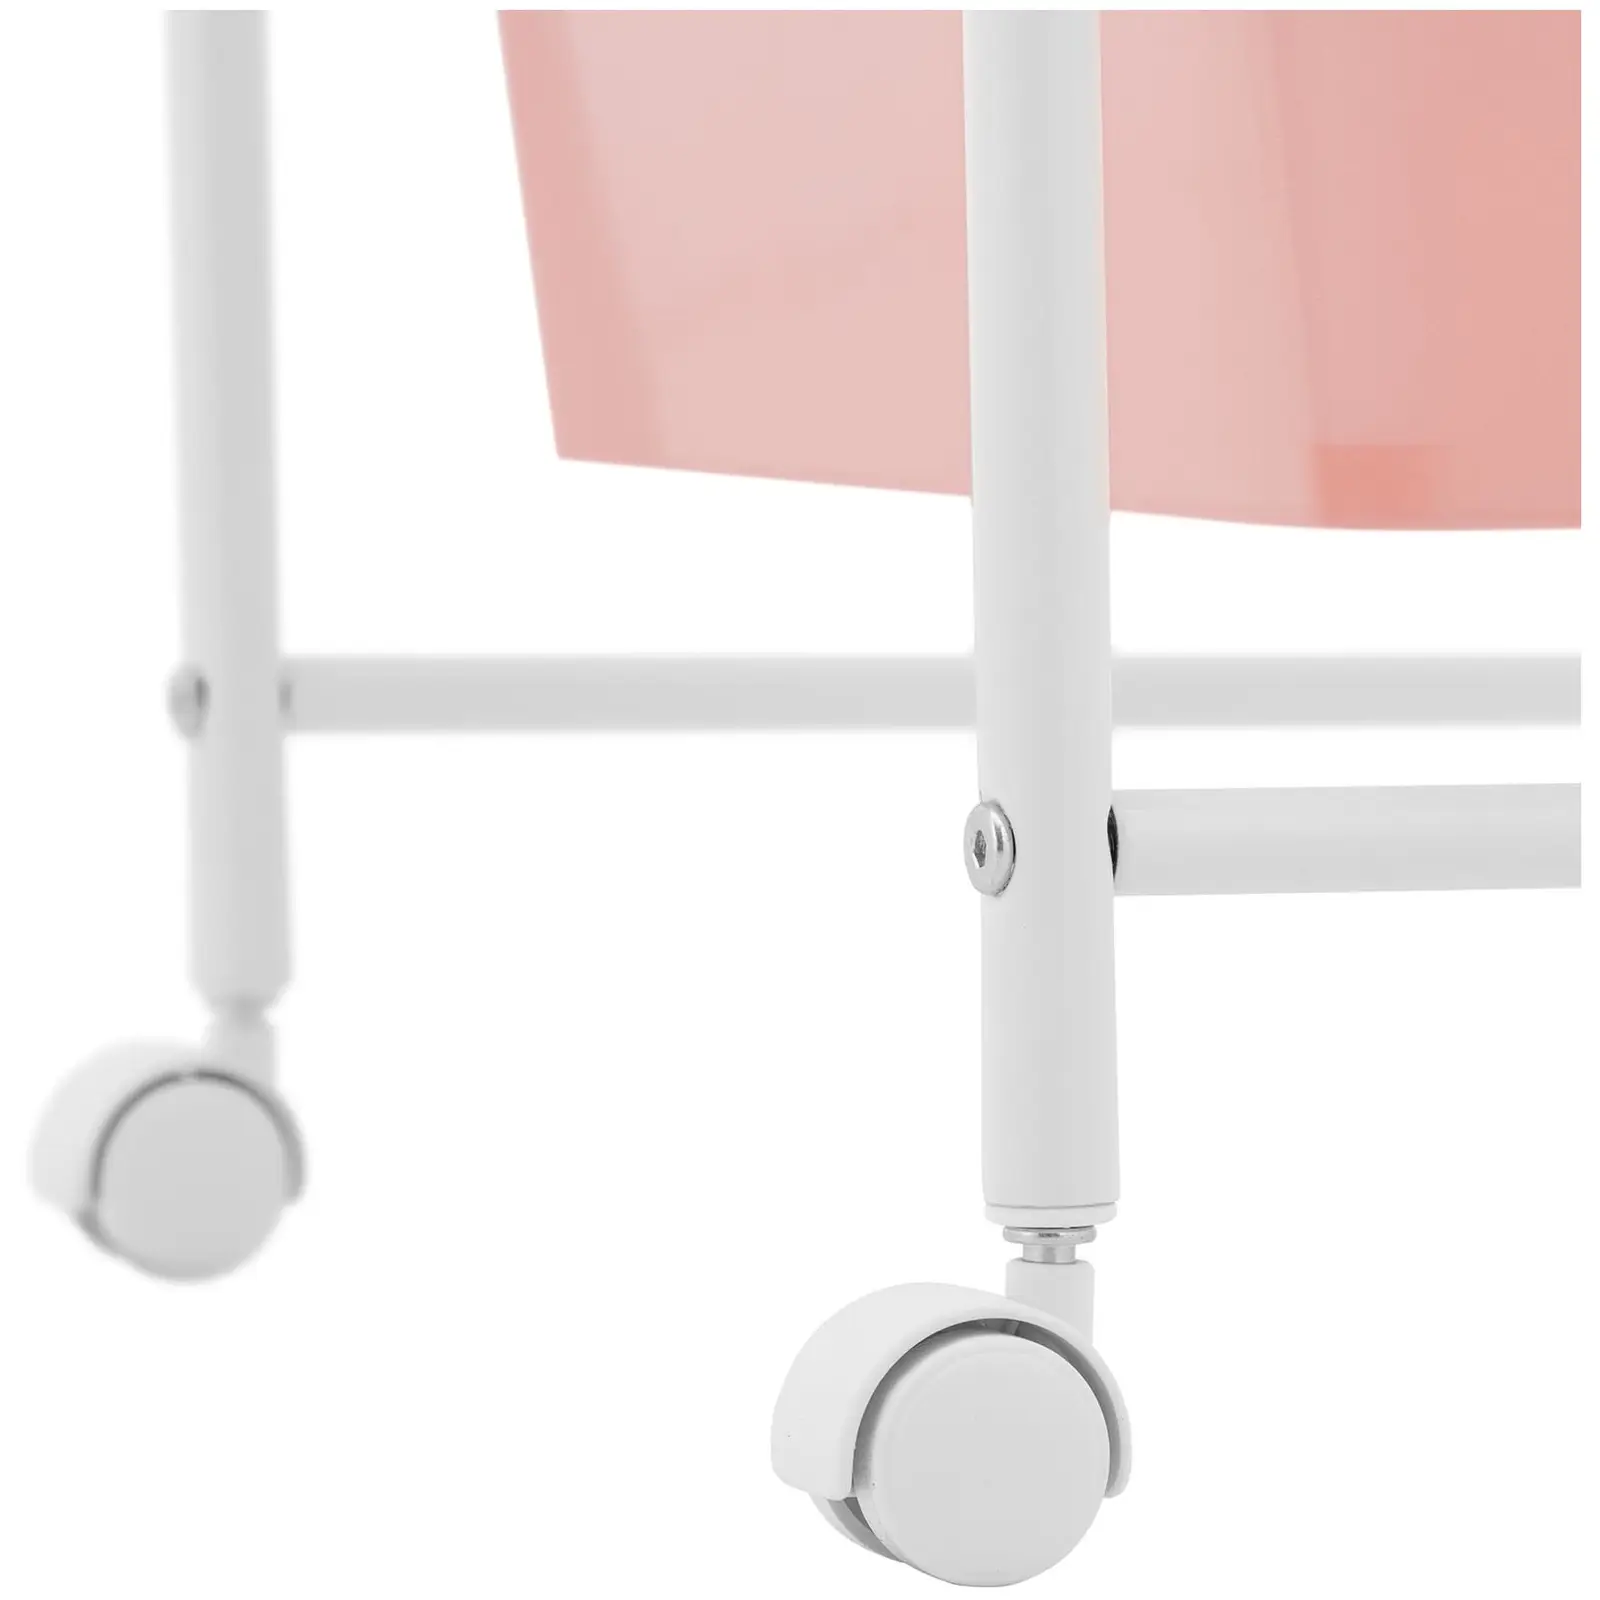 Rullebord med skuffer - 4 skuffer - rosa og hvid